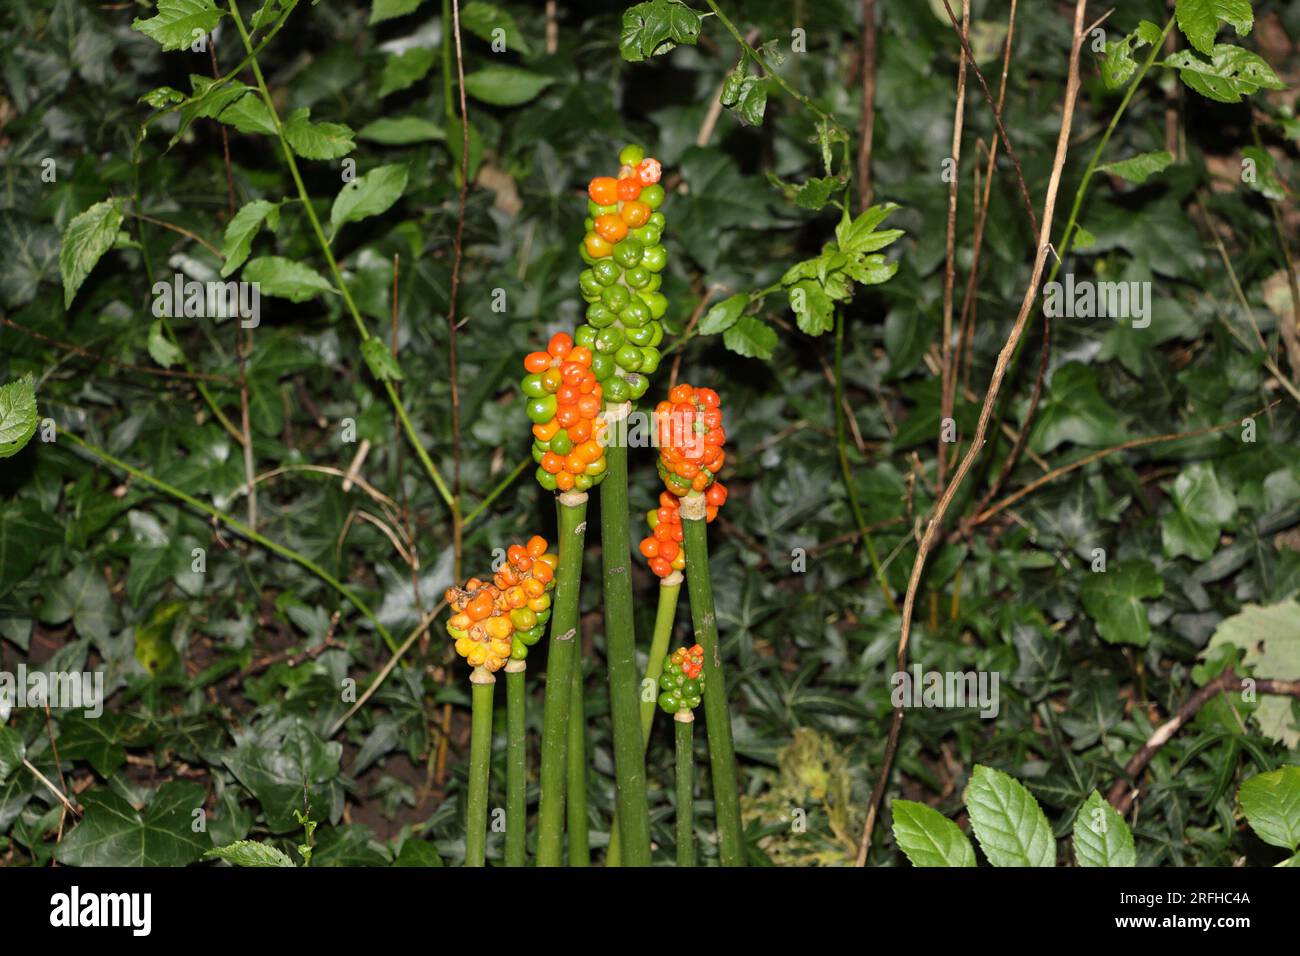 Beeren Stockfotografie auf wachsen Die Maculatum-Stamm in Waldhecke, Alamy - Obstbeeren Arum giftige